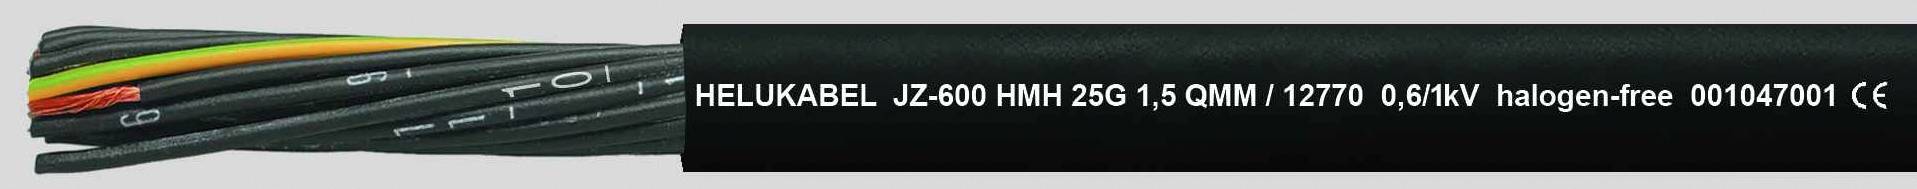 HELUKABEL JZ-600 HMH Steuerleitung 3 G 2.50 mm² Schwarz 12772-500 500 m